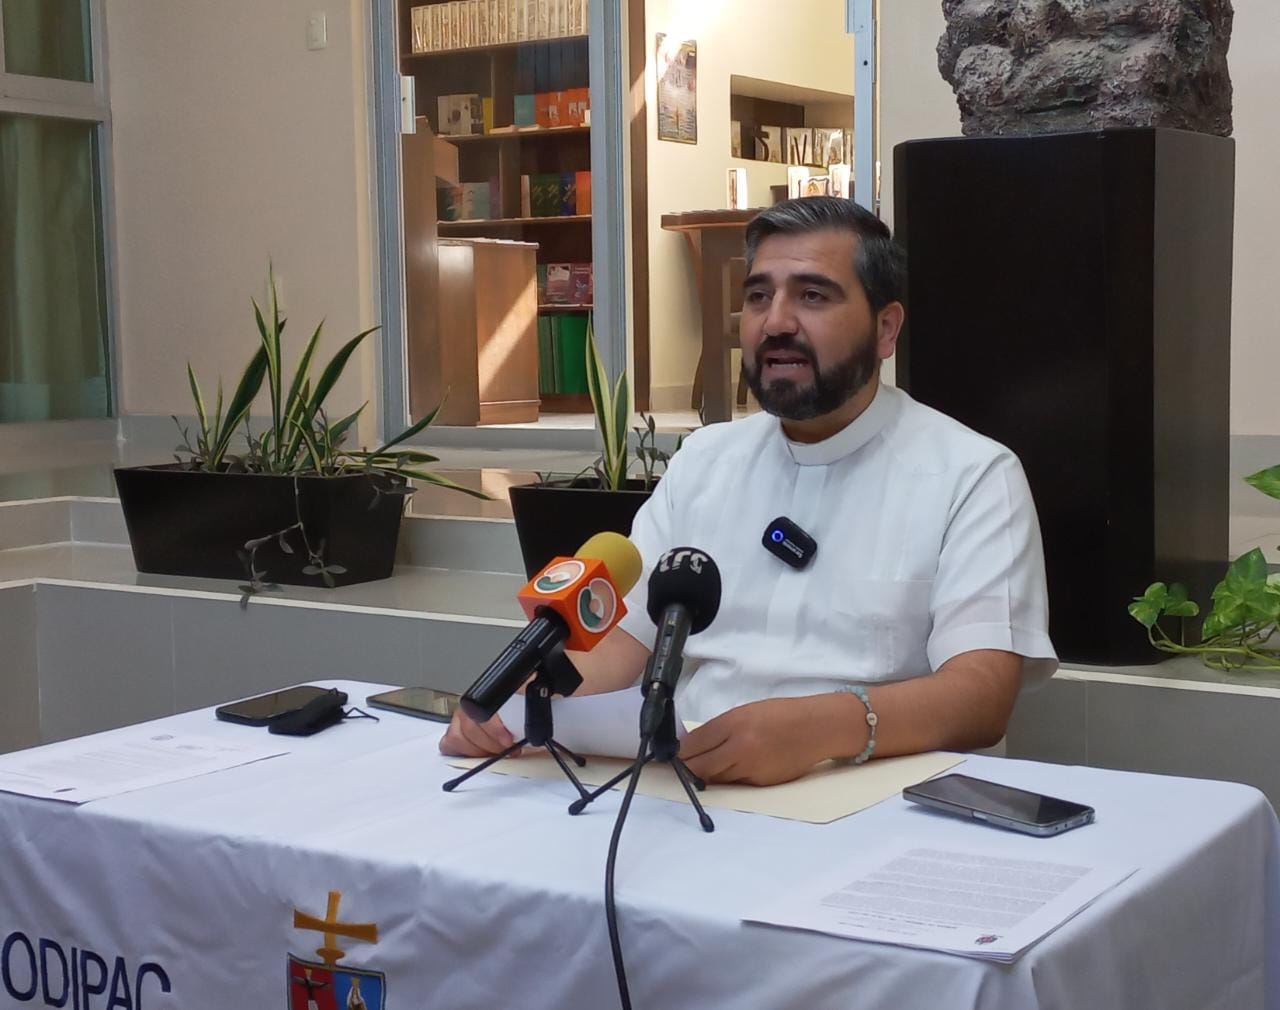 Iglesia católica de Campeche, preocupada por el aumento en la violencia